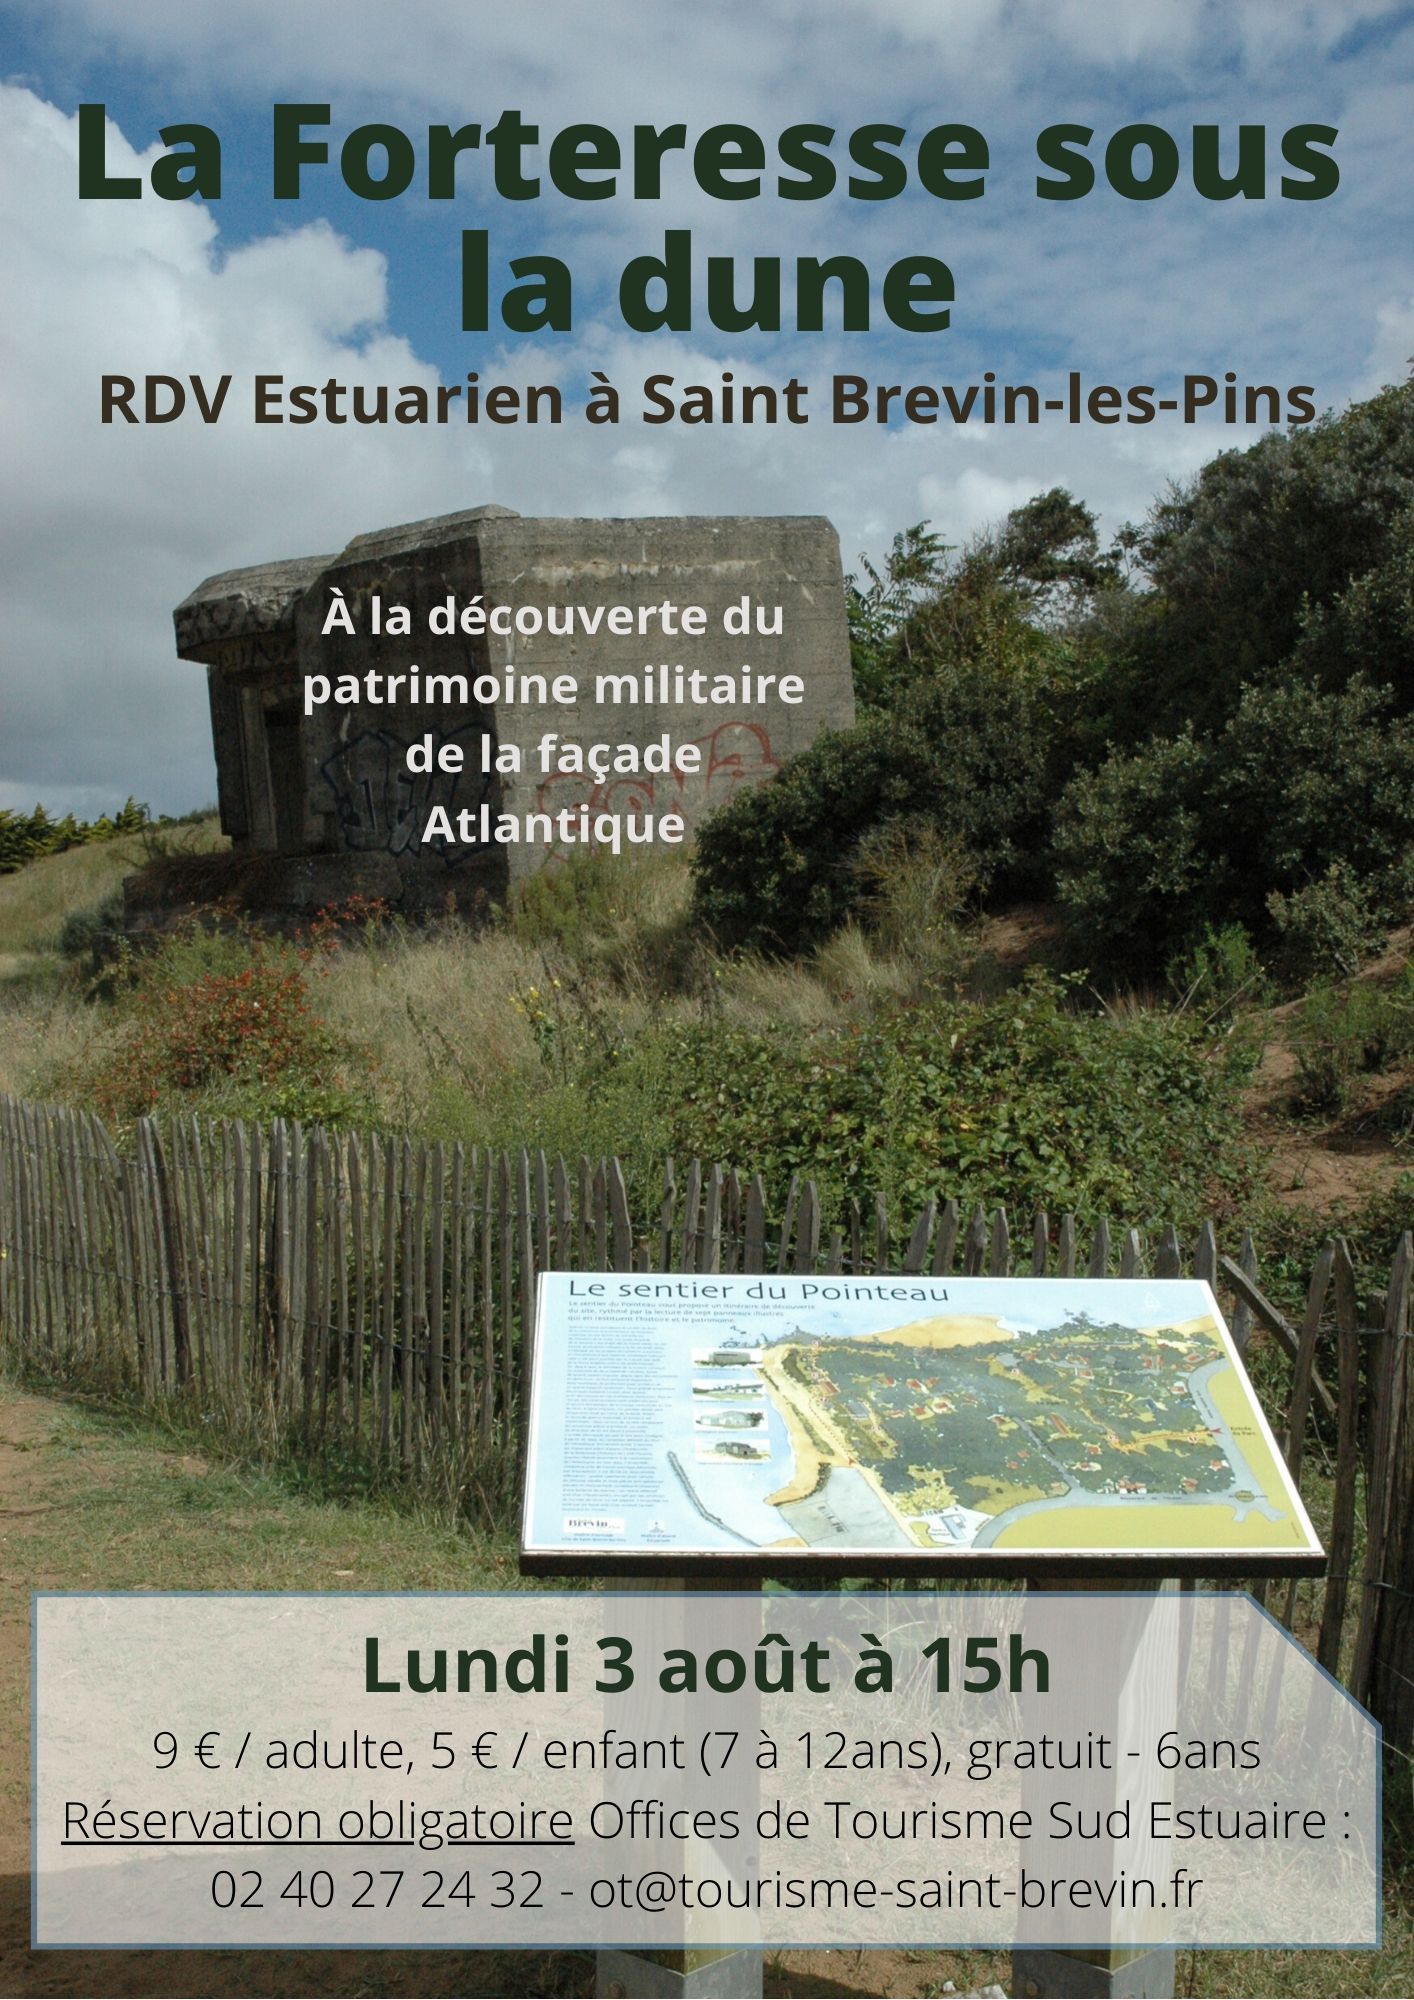 RDV Estuarien aout 2020 - Forteresse sous la dune - ST BREVIN